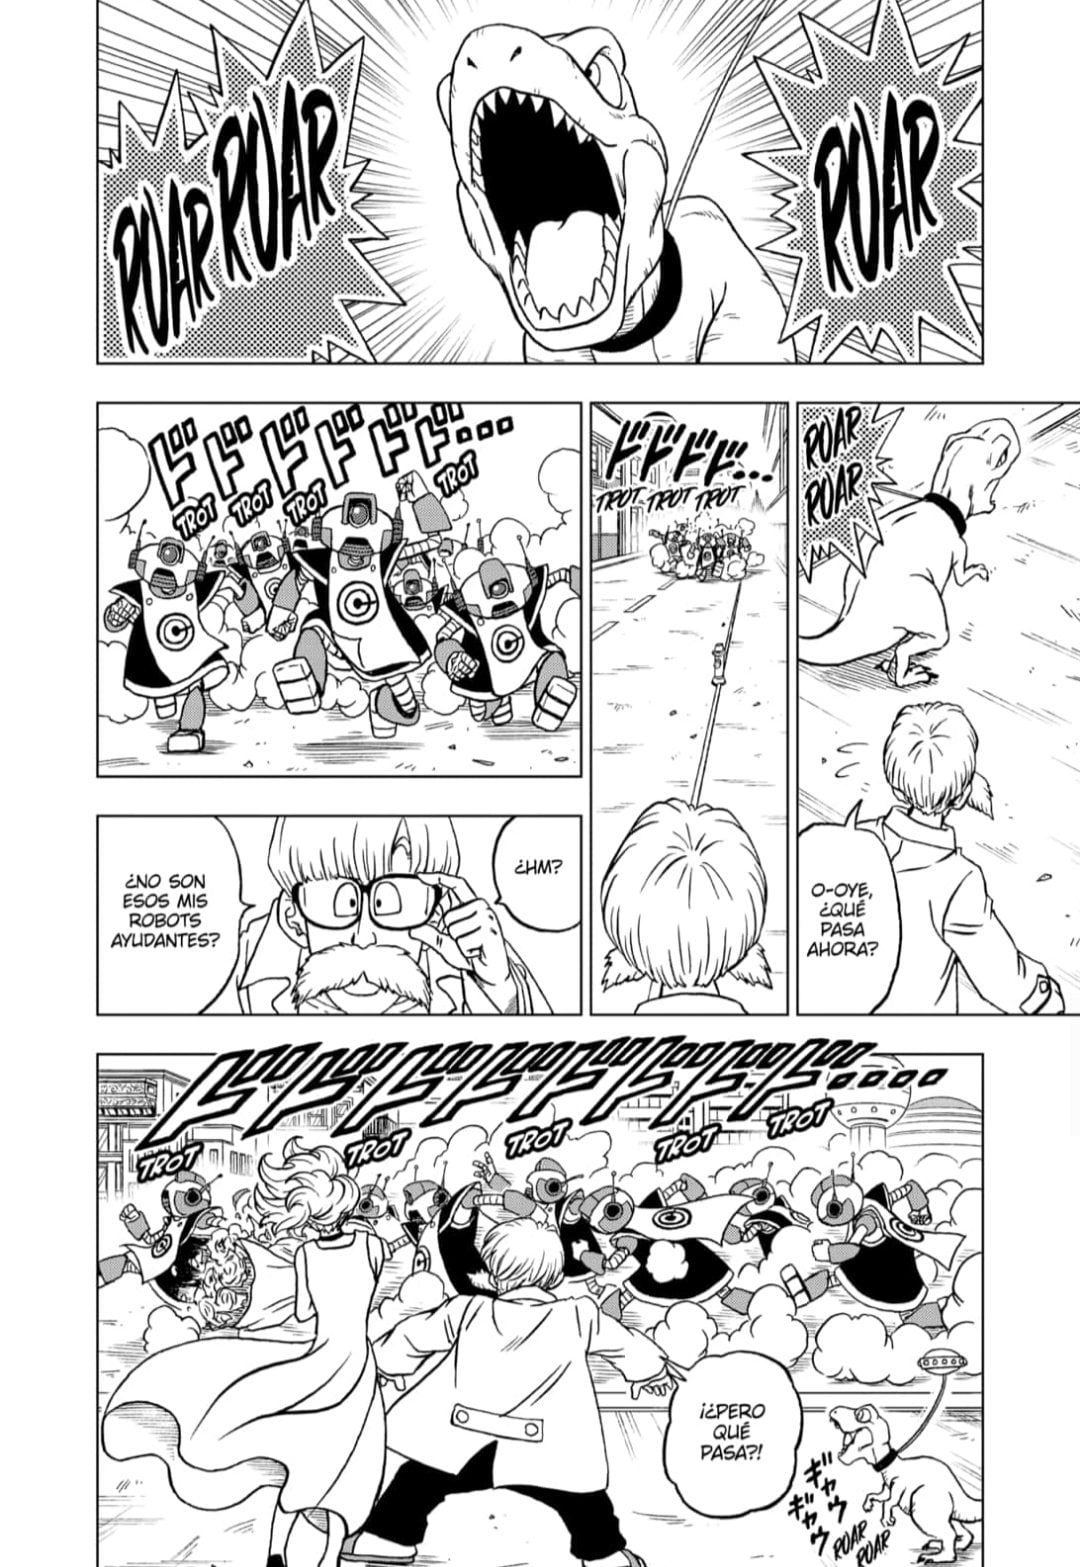 Animetrends on X: Portada para el capítulo 88 del manga DRAGON BALL SUPER,  en plataformas oficiales desde este 20 de diciembre.   / X